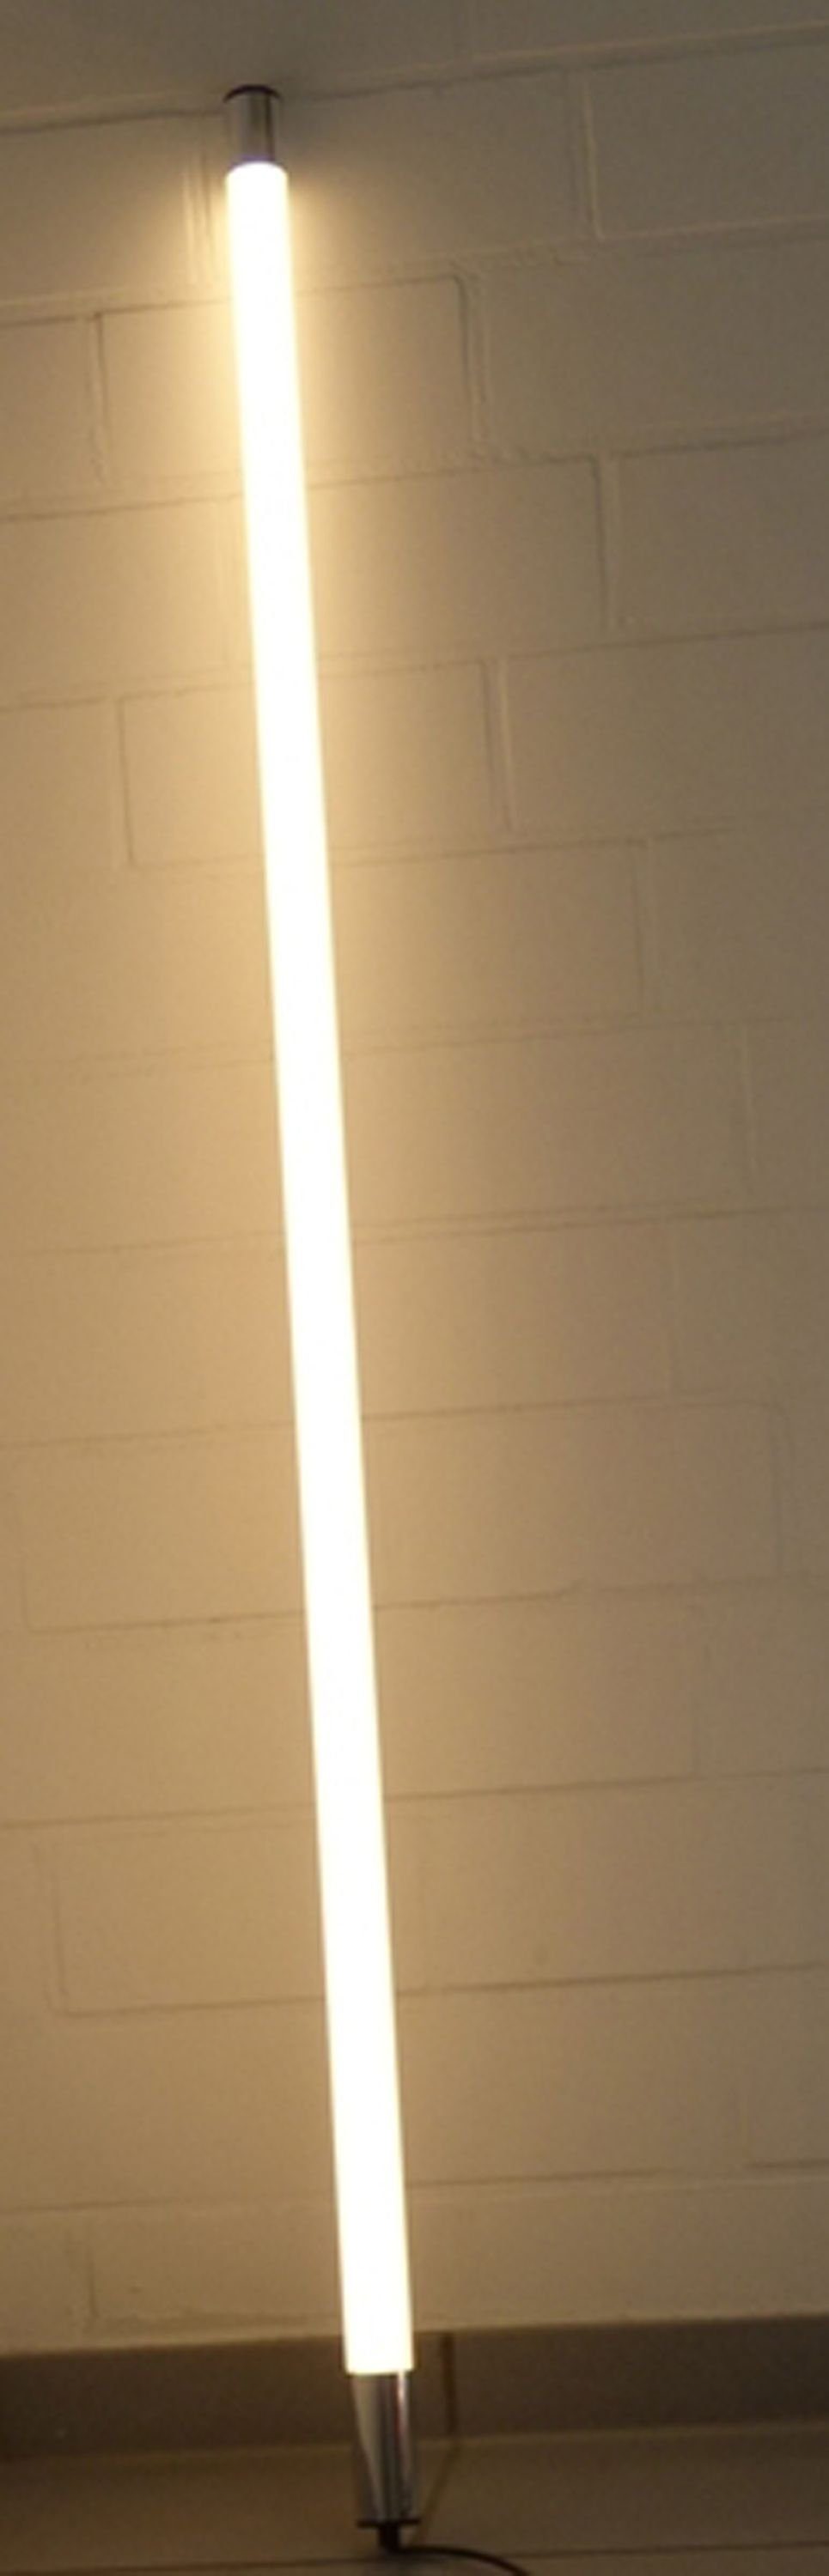 LED Wandleuchte Röhre LED 1,23m Satiniert Weiß Lumen Außen T8, 1700 Weiß, XENON Länge Leuchtstab Warm Xenon IP44 LED Warm